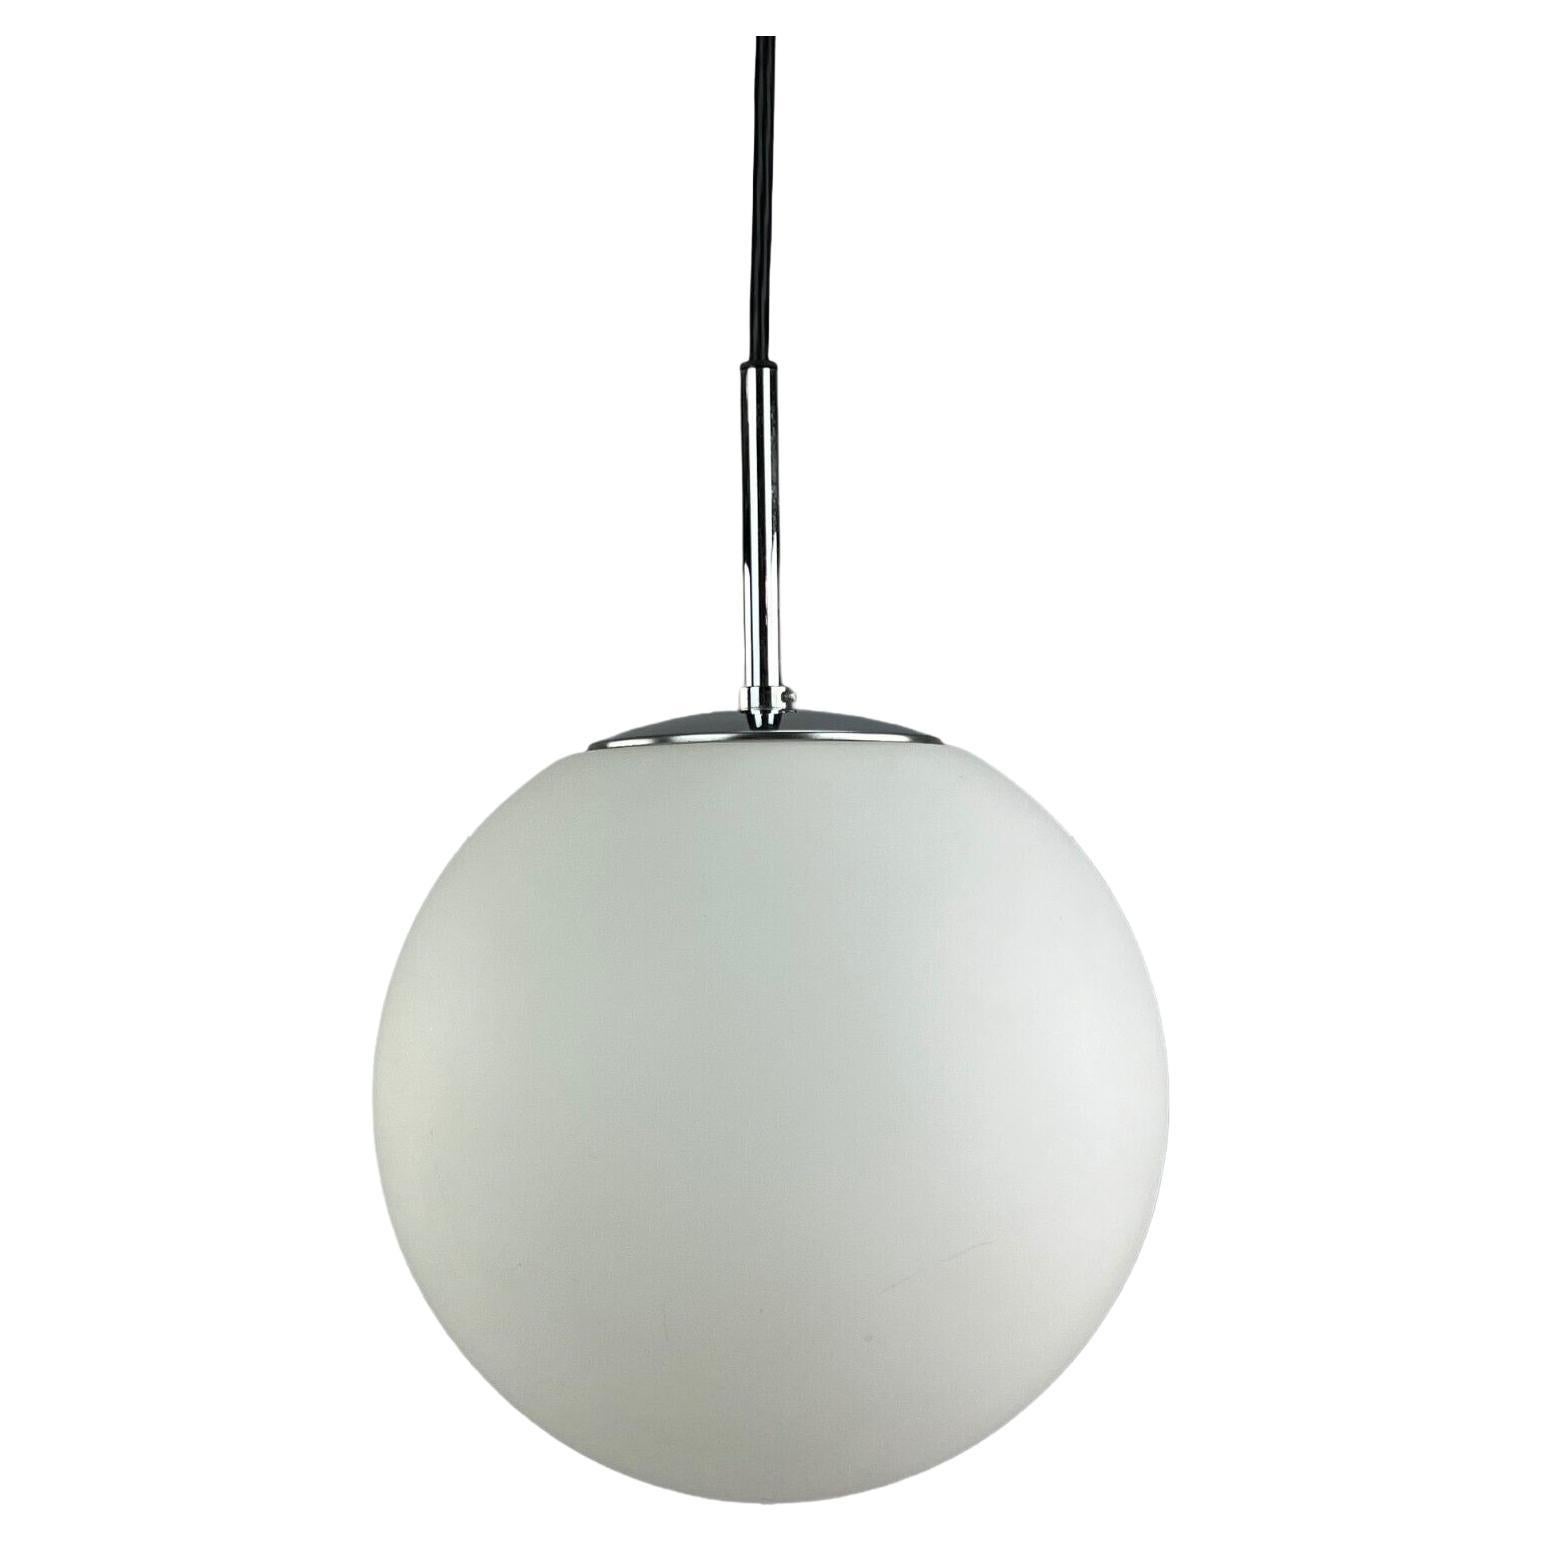 60s 70s Lamp Light Ceiling Lamp Limburg Spherical Lamp Ball Design